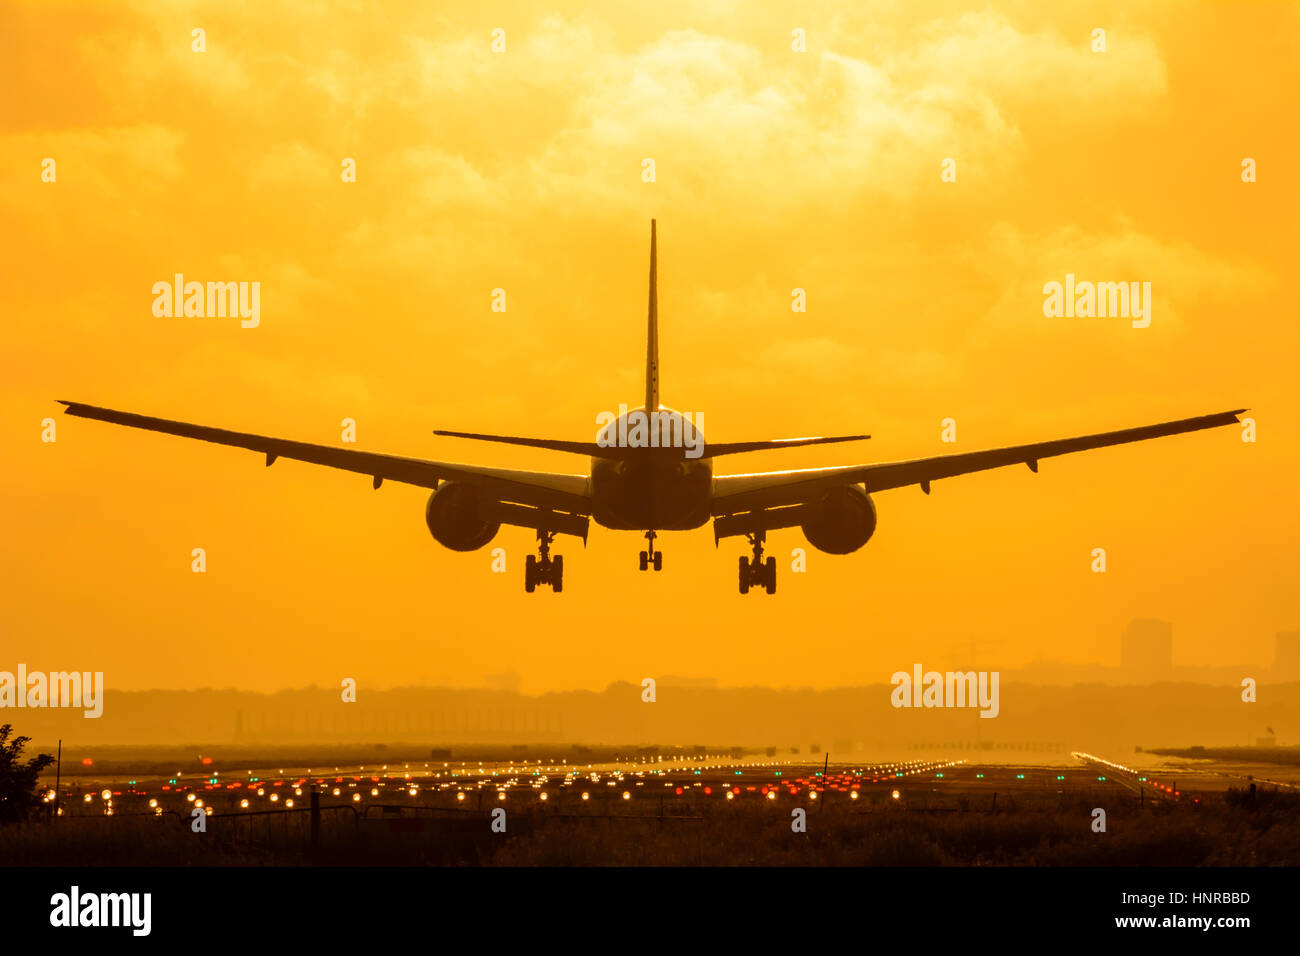 Avion est l'atterrissage pendant le lever du soleil. Photo est prise sur un ciel nuageux le matin tôt. Banque D'Images